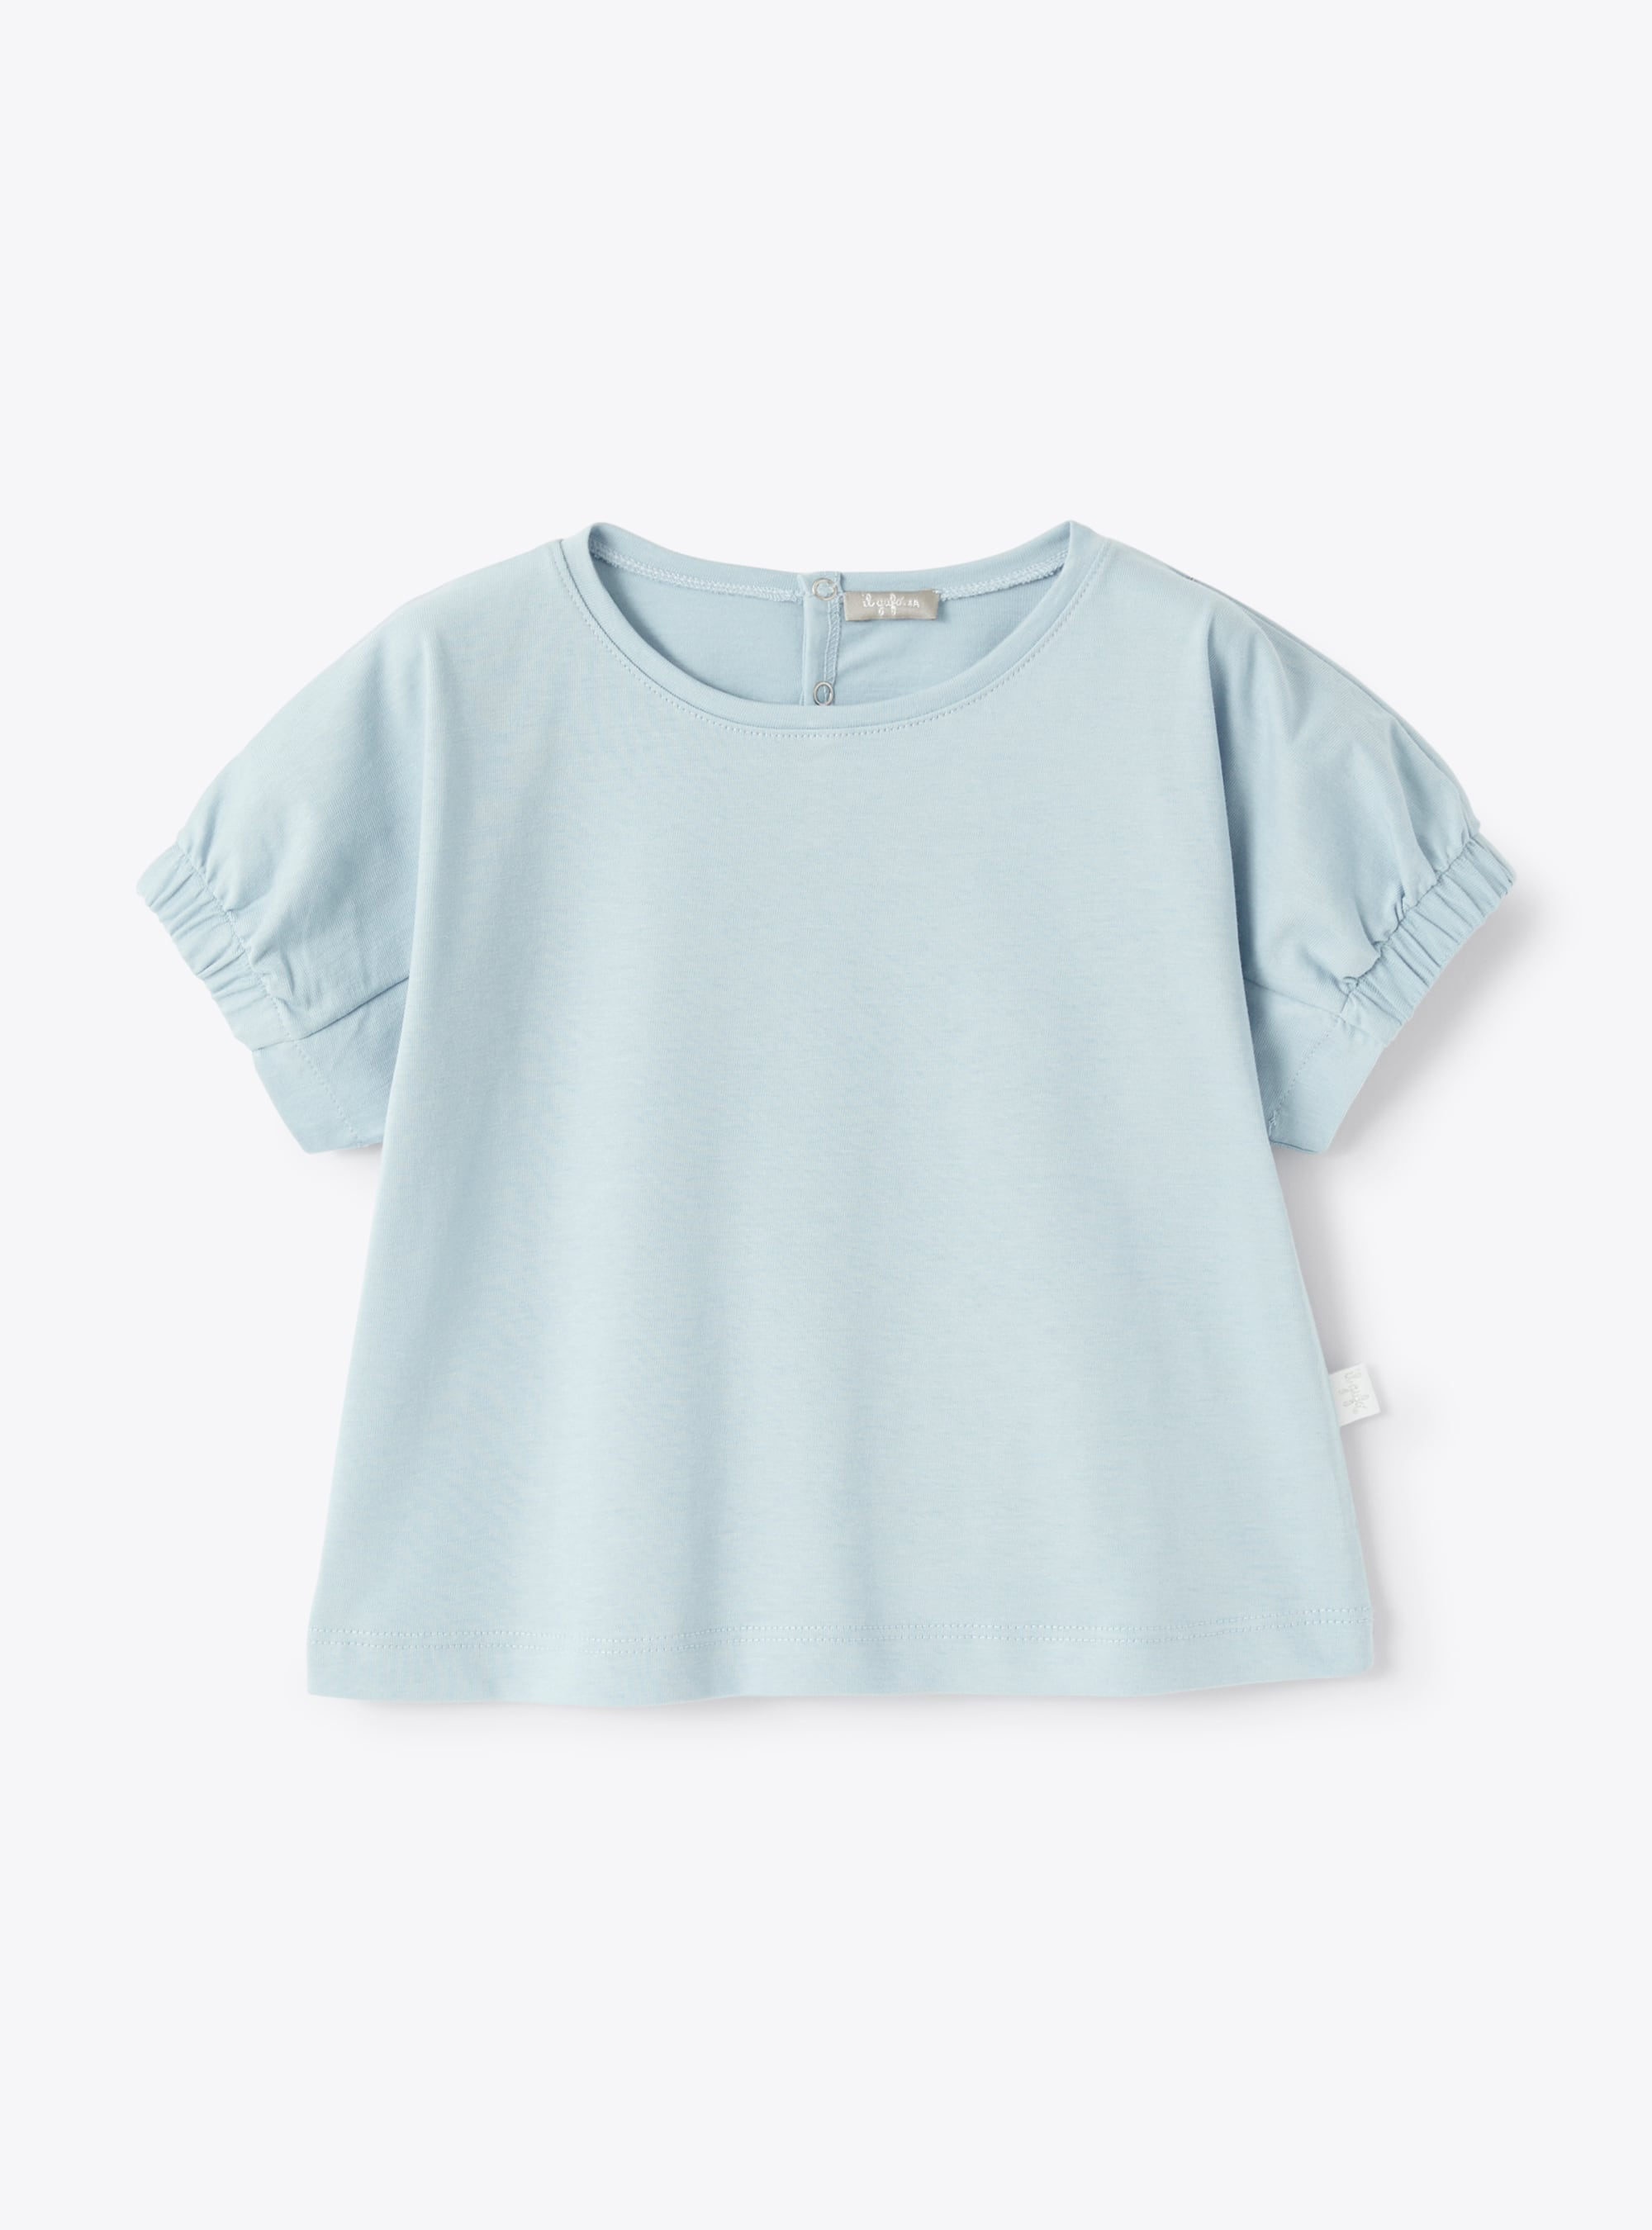 T-shirt bleu ciel à manches courtes - T-shirts - Il Gufo